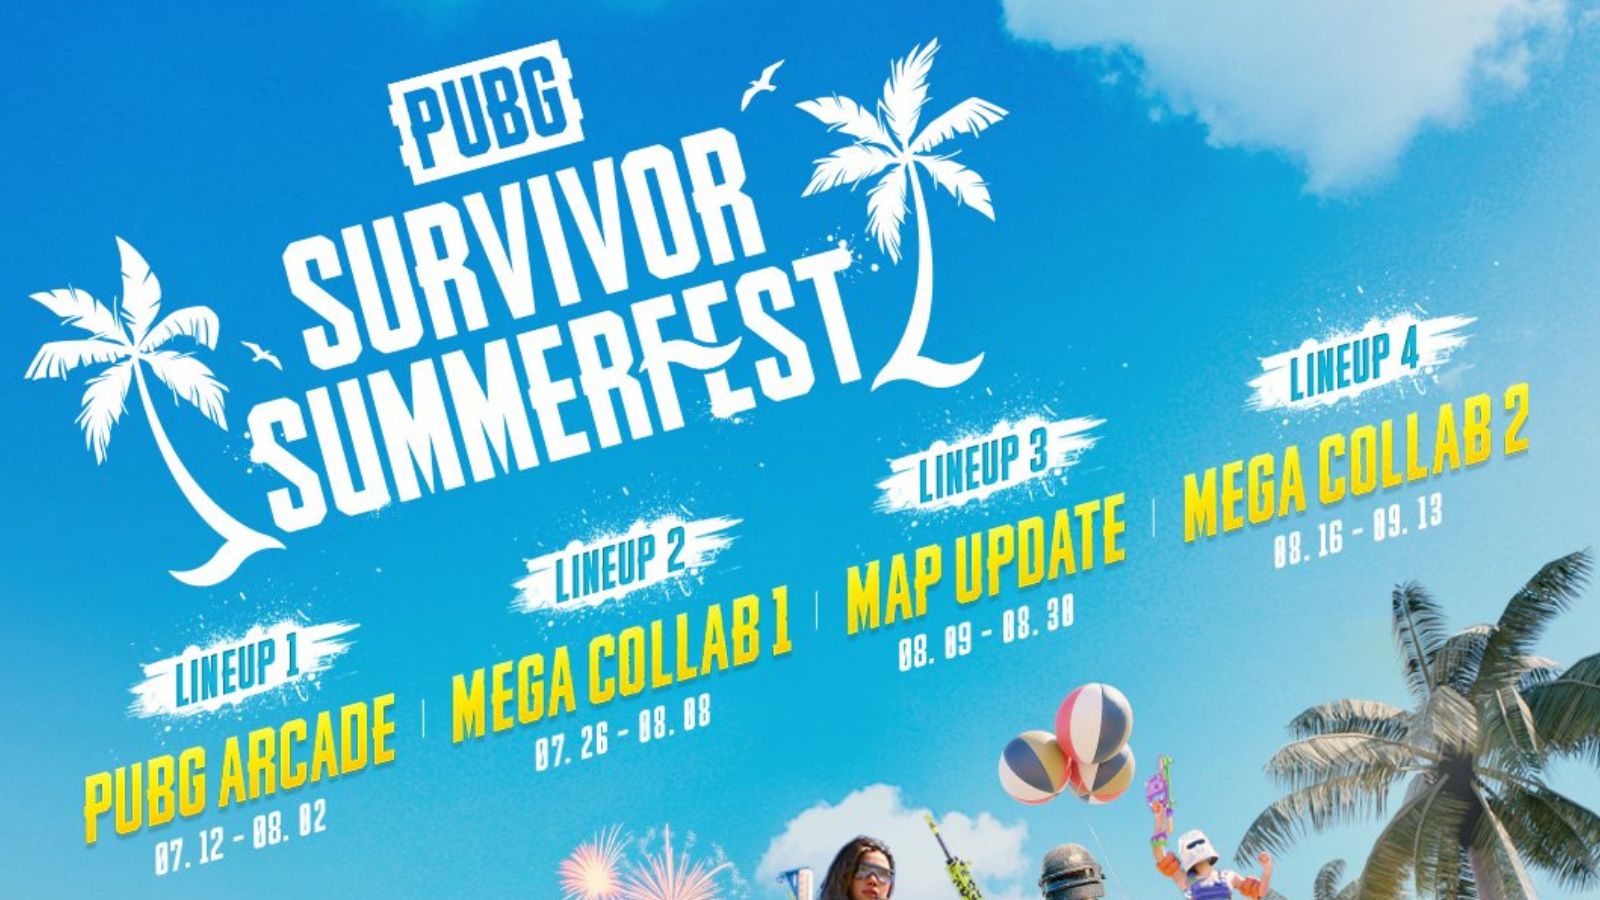 Событие PUBG Survivor Summerfest прибыло с мега-составом